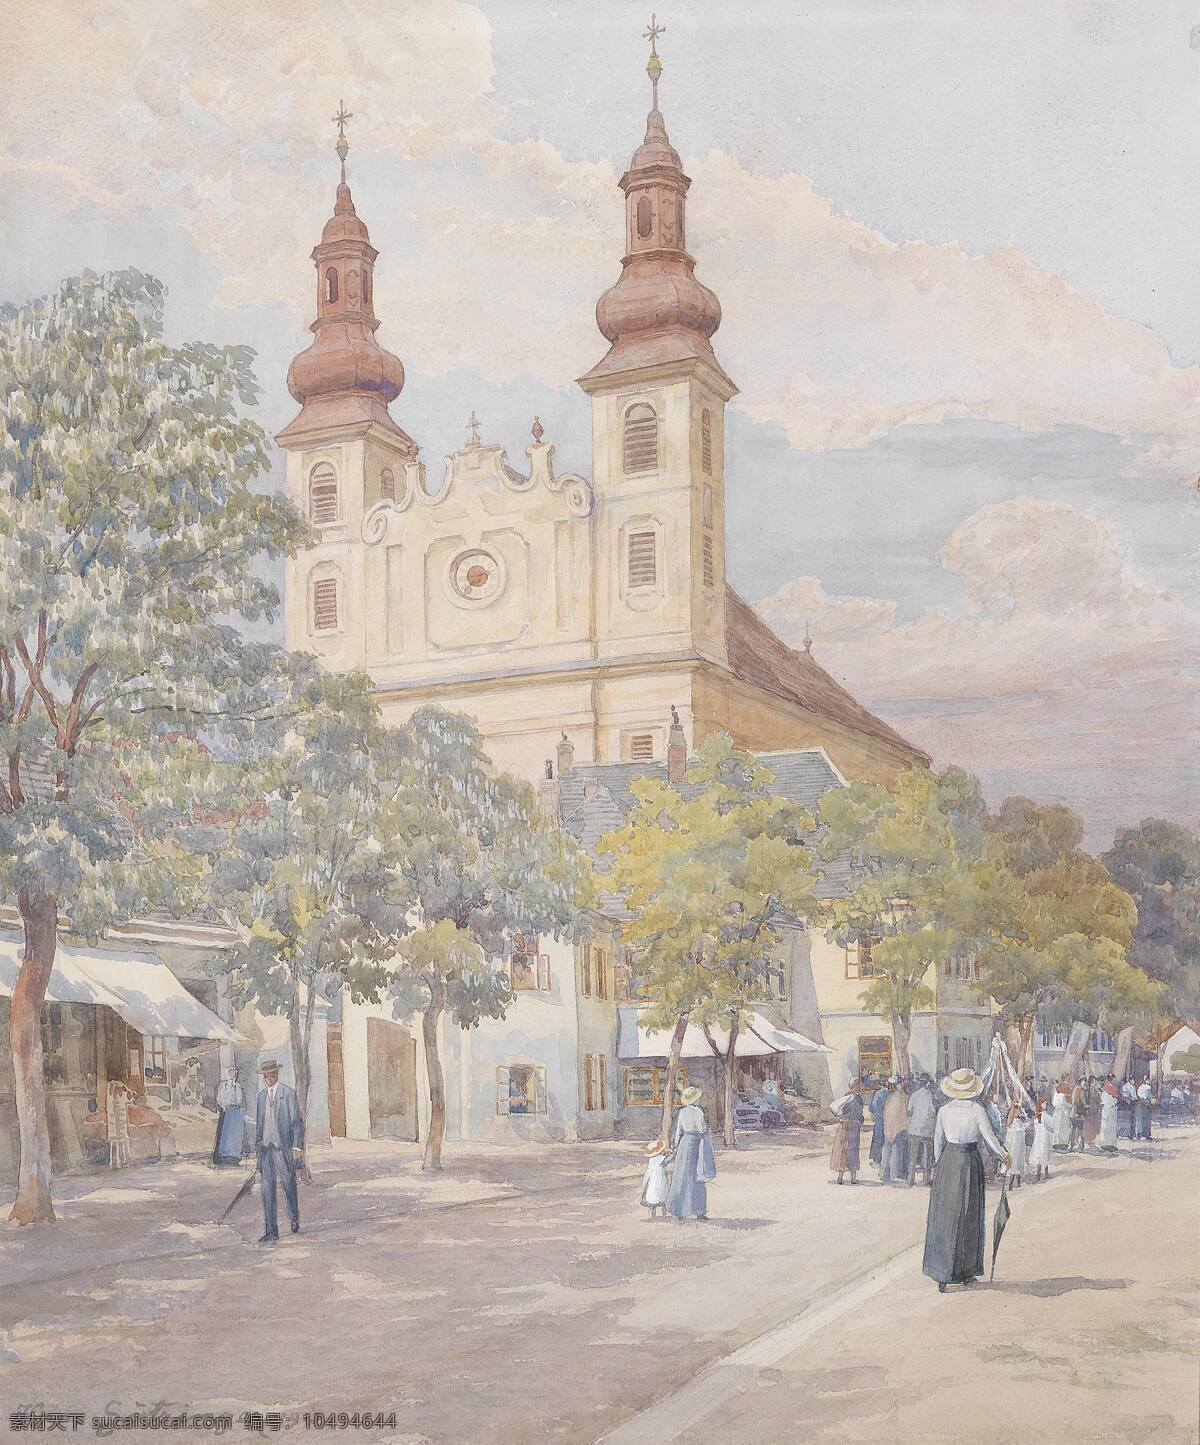 玛丽教堂 附近 树木 行人 街道 世纪 水彩画 文化艺术 绘画书法